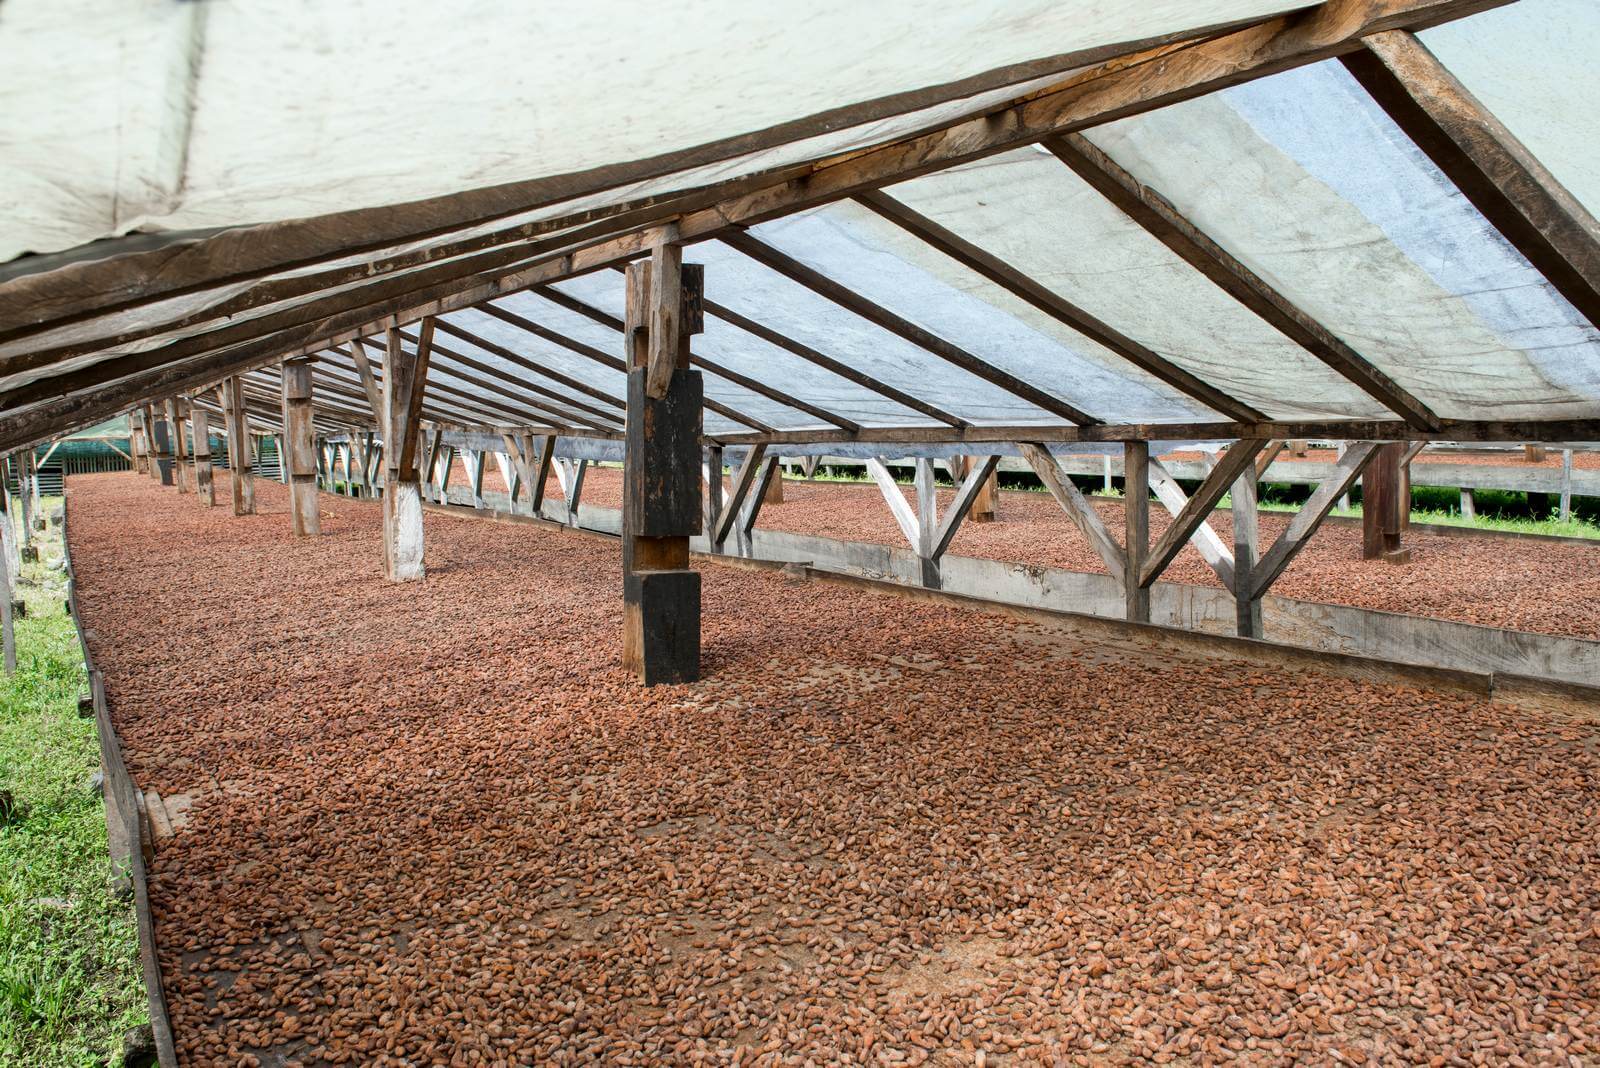 Foto: Trocknung von Kakaobohnen auf Principe - Bildrechte Matthias Graben - Lupe Reisen